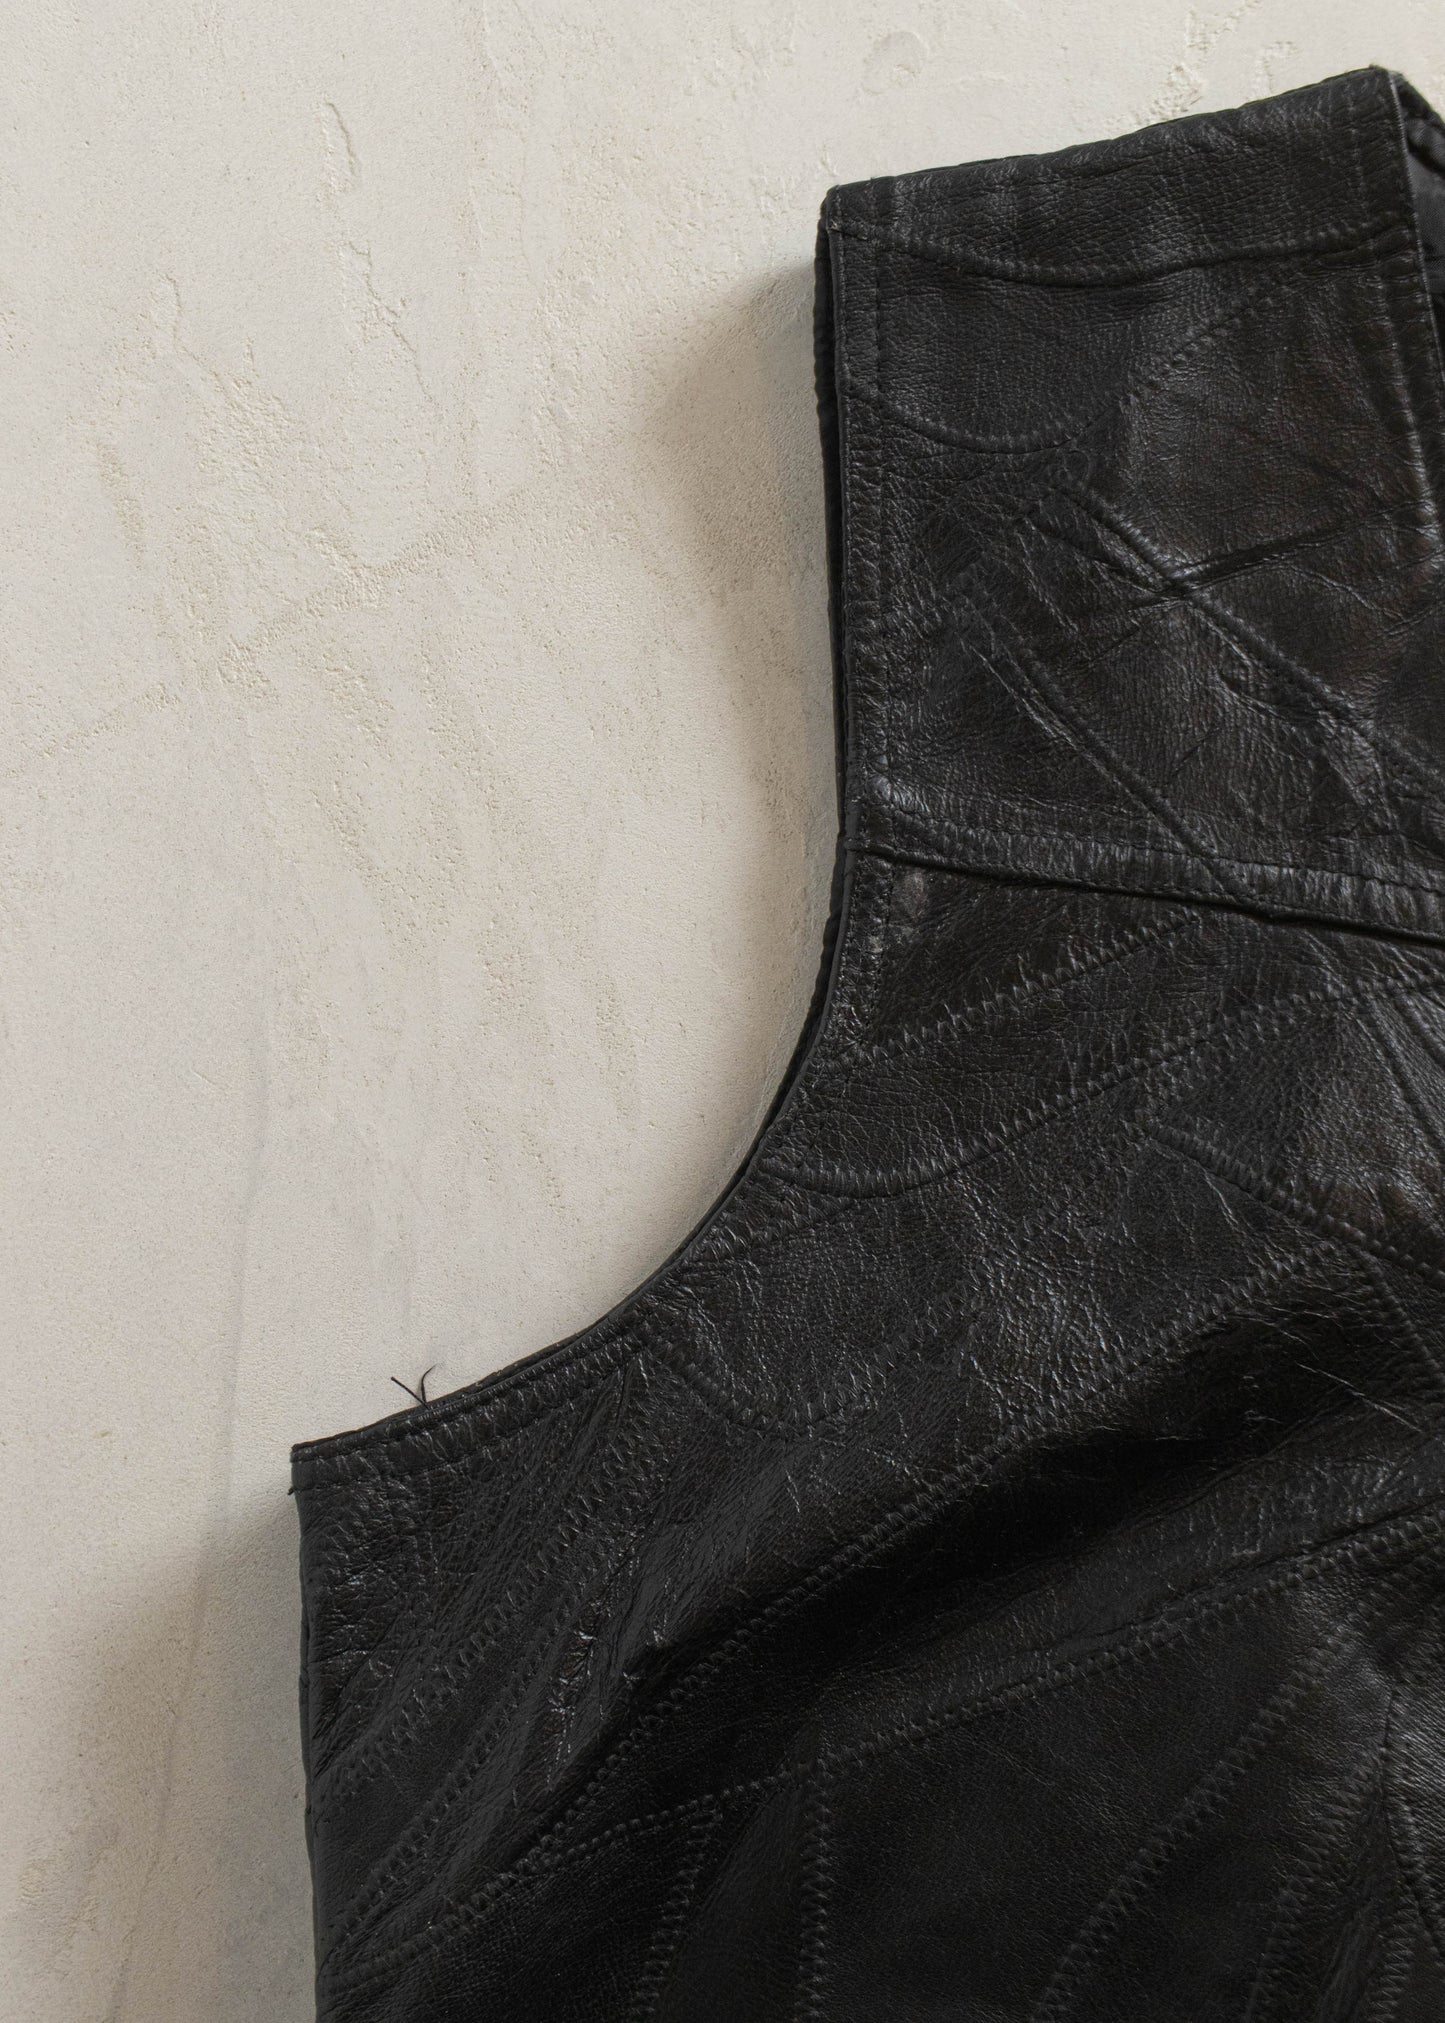 Vintage 1980s Leather Vest Size M/L